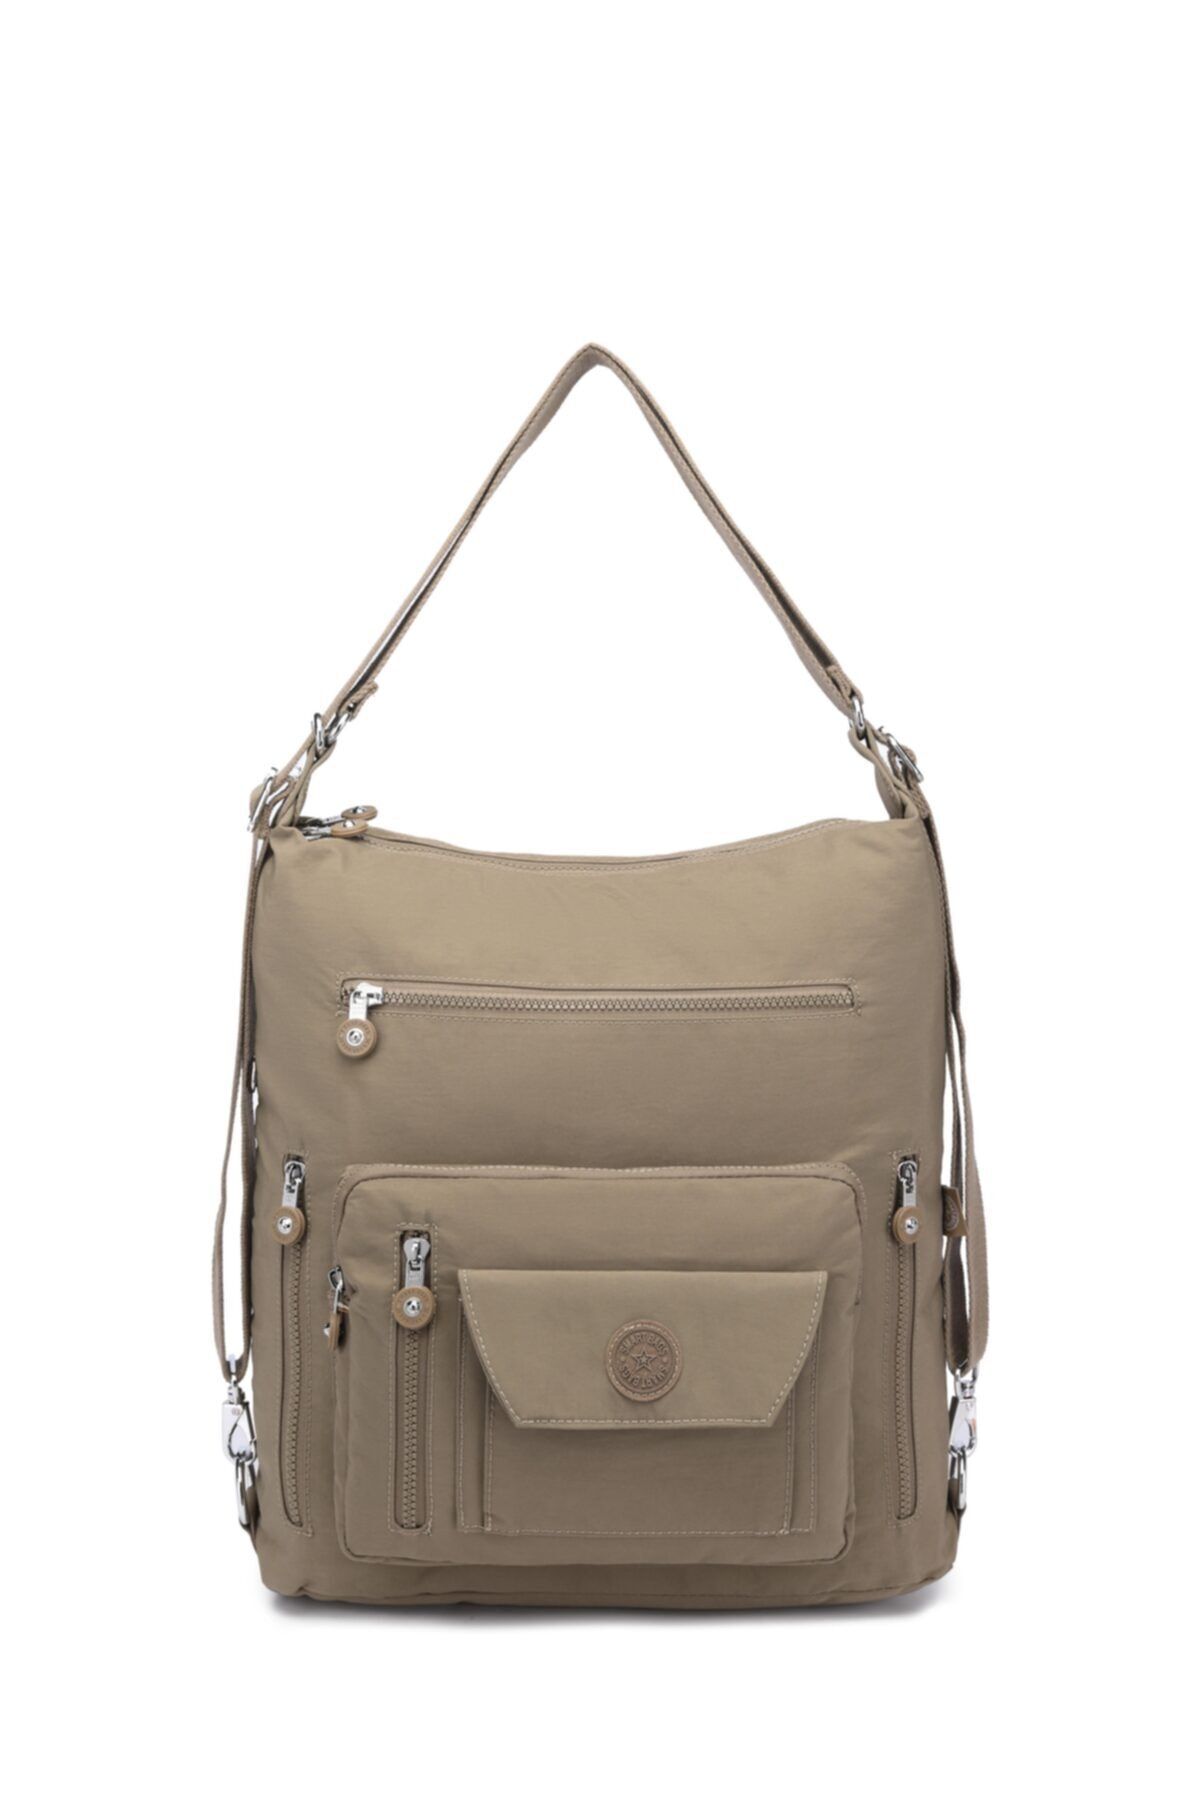 Smart Bags Açık Kahverengi Kadın Omuz Ve Sırt Çantası